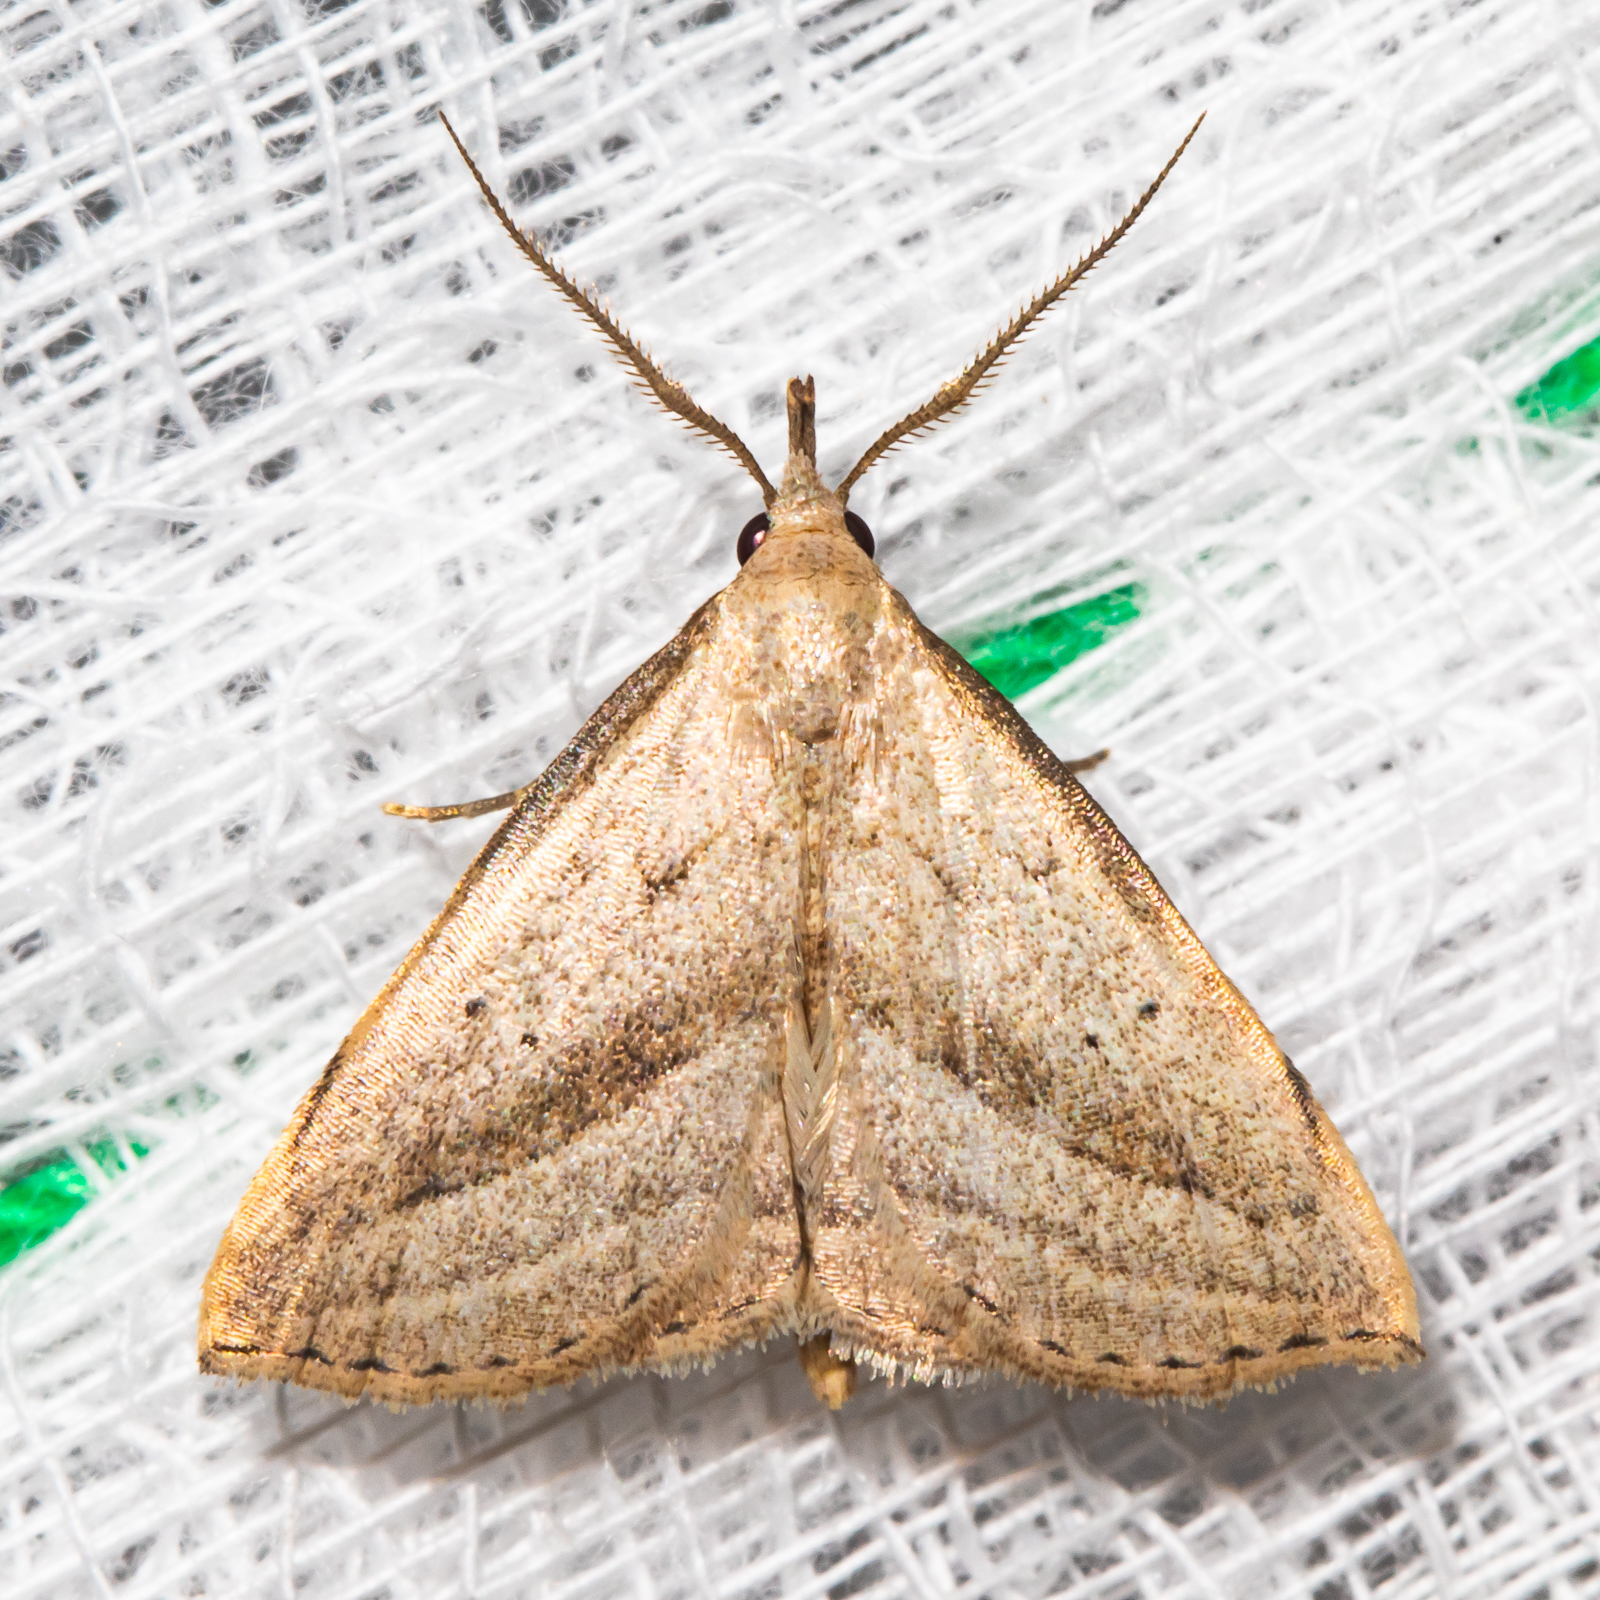 Twin-dotted Macrochilo Moth